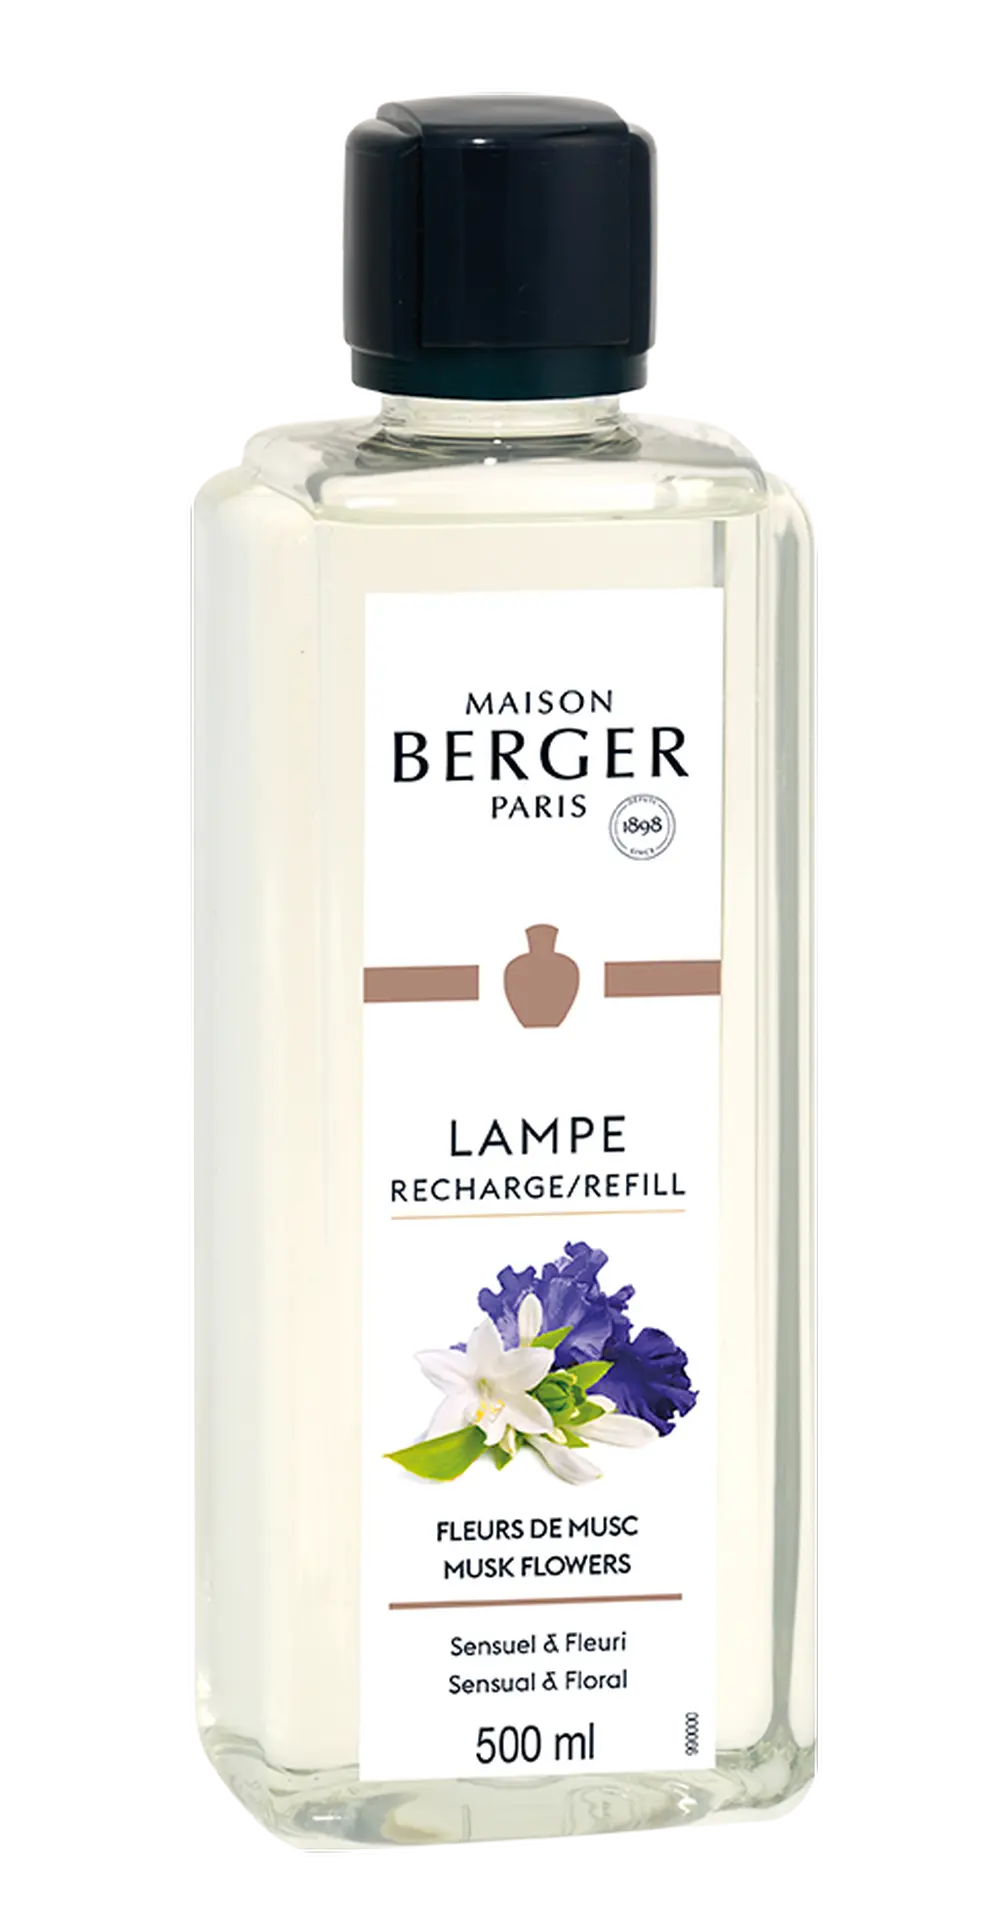 MAISON BERGER PARIS - Musk Flowers – Lampe Berger Duft 500 ml - Zarte Moschusblüte - Raumduft